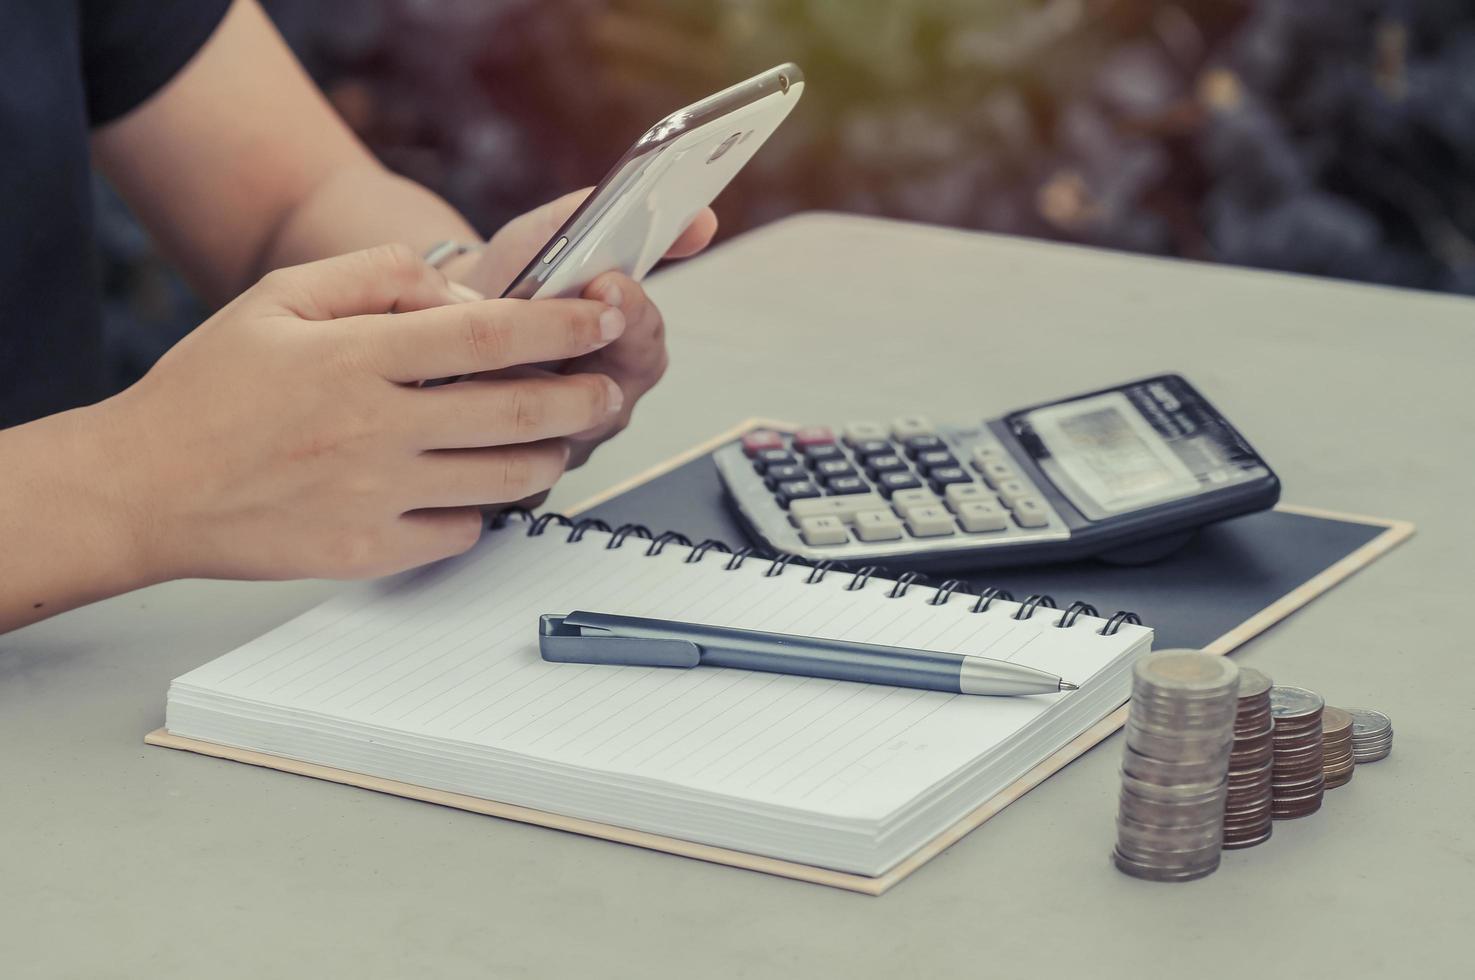 mulheres usam telefone com livro, calculadora e moedas na mesa foto